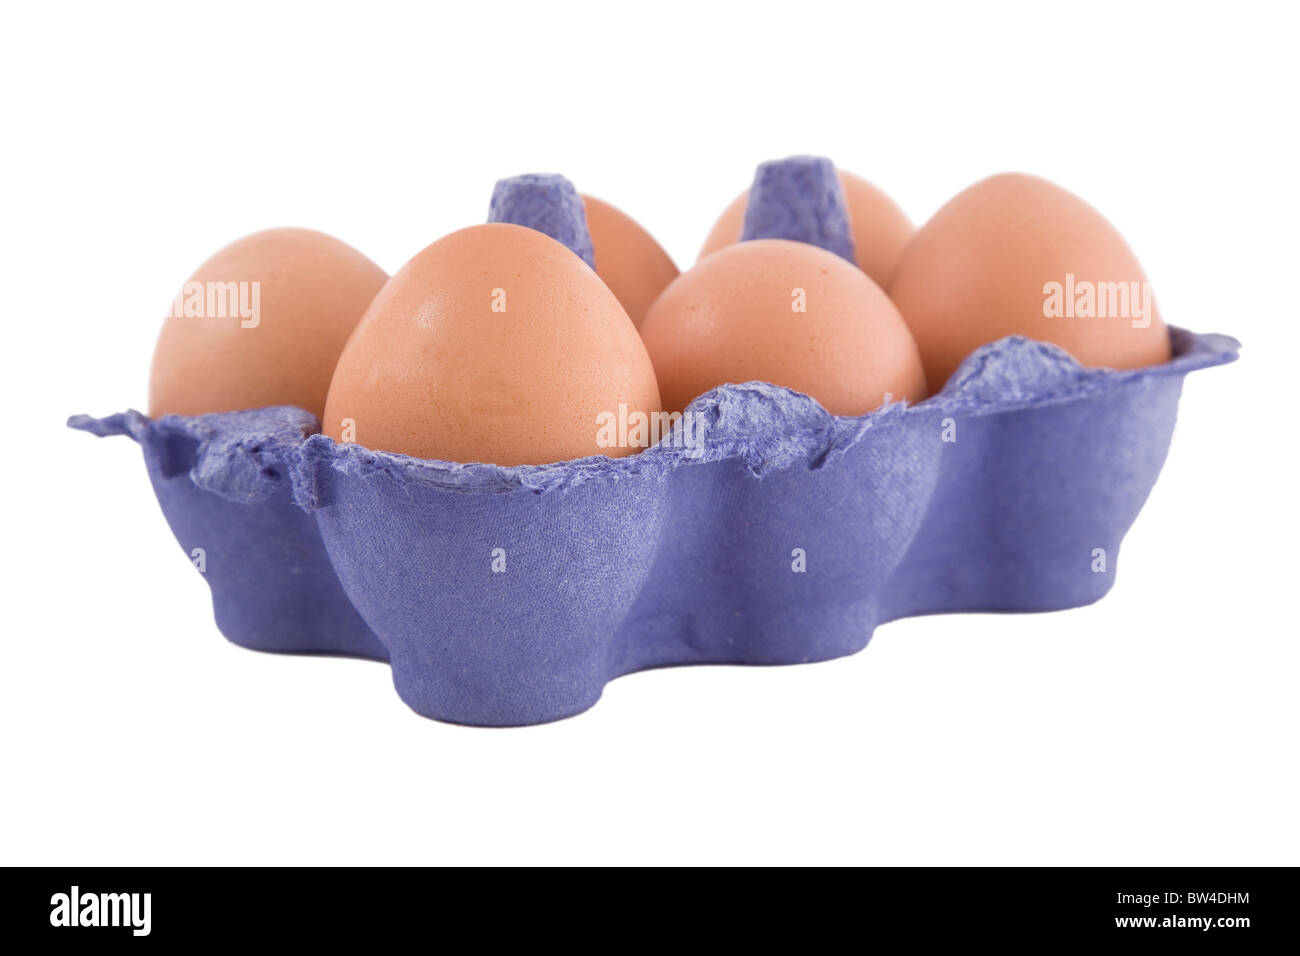 Brown uova di galline in blu confezione di uova, isolato su sfondo bianco Foto Stock